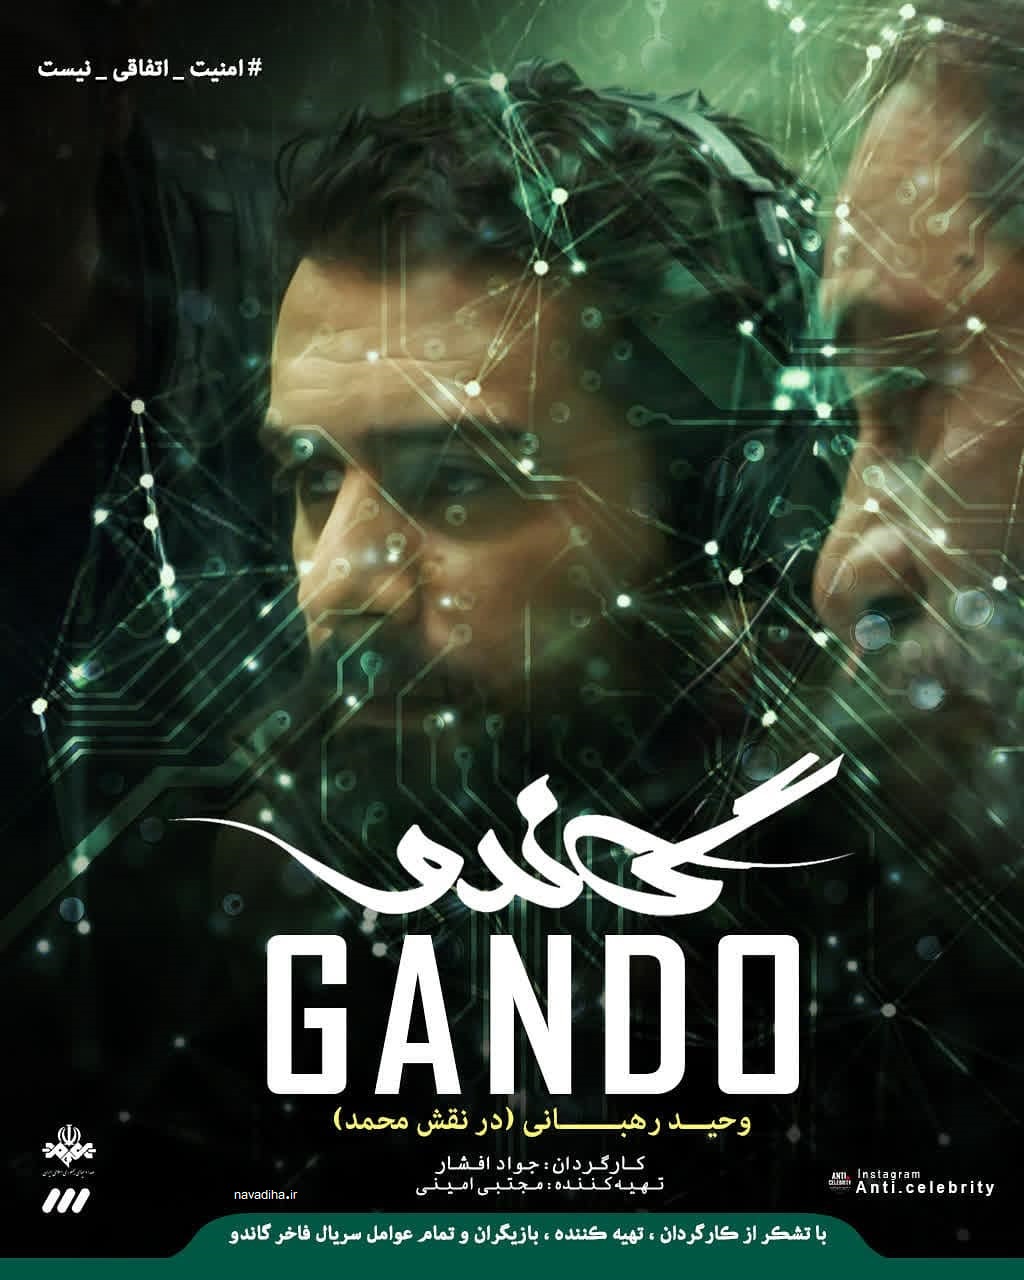 تحریم مالی صداوسیما به خاطر گاندو / چرا دولت اصرار دارد با این سریال مقابله کند؟